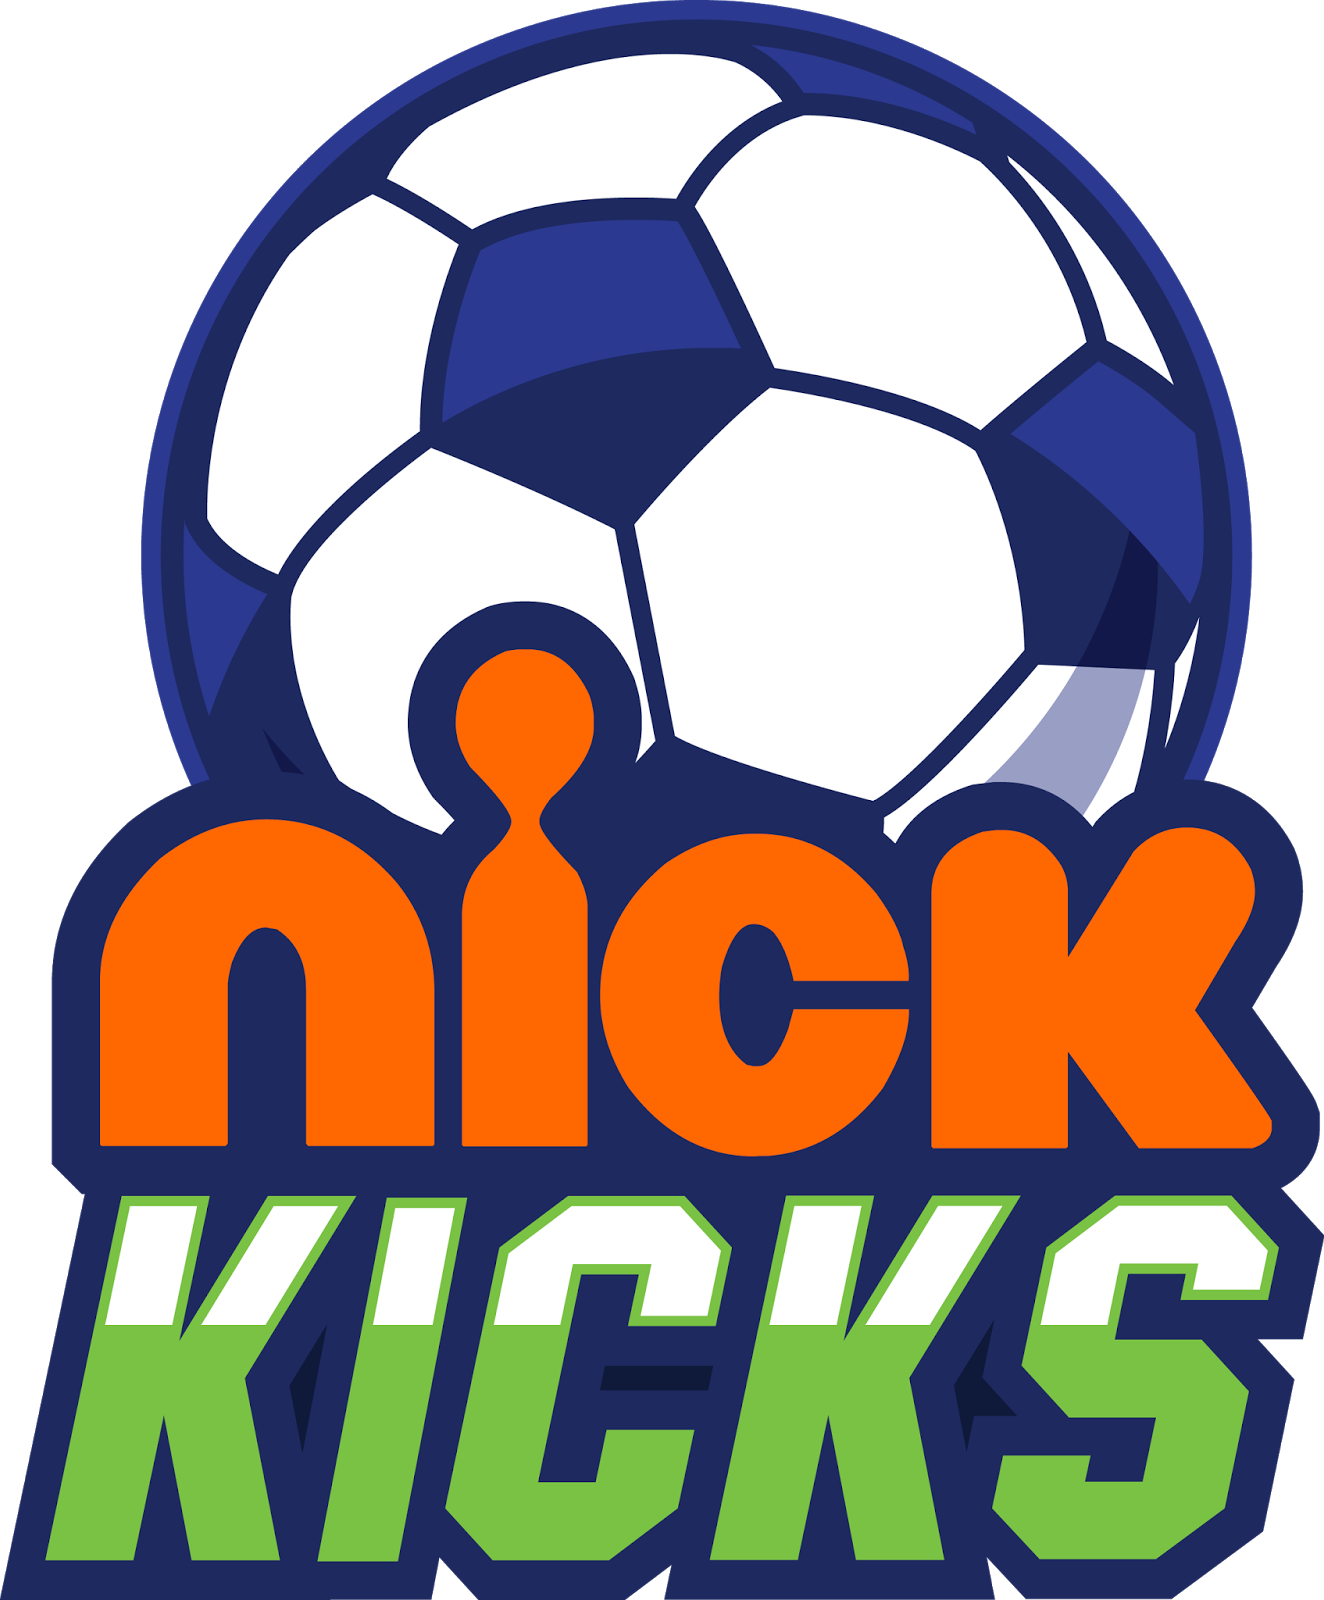 NickALive!: Nickelodeon UK's Nick Kicks Season Two Kicks Off Friday 12th  August 2016 On Nicktoons UK